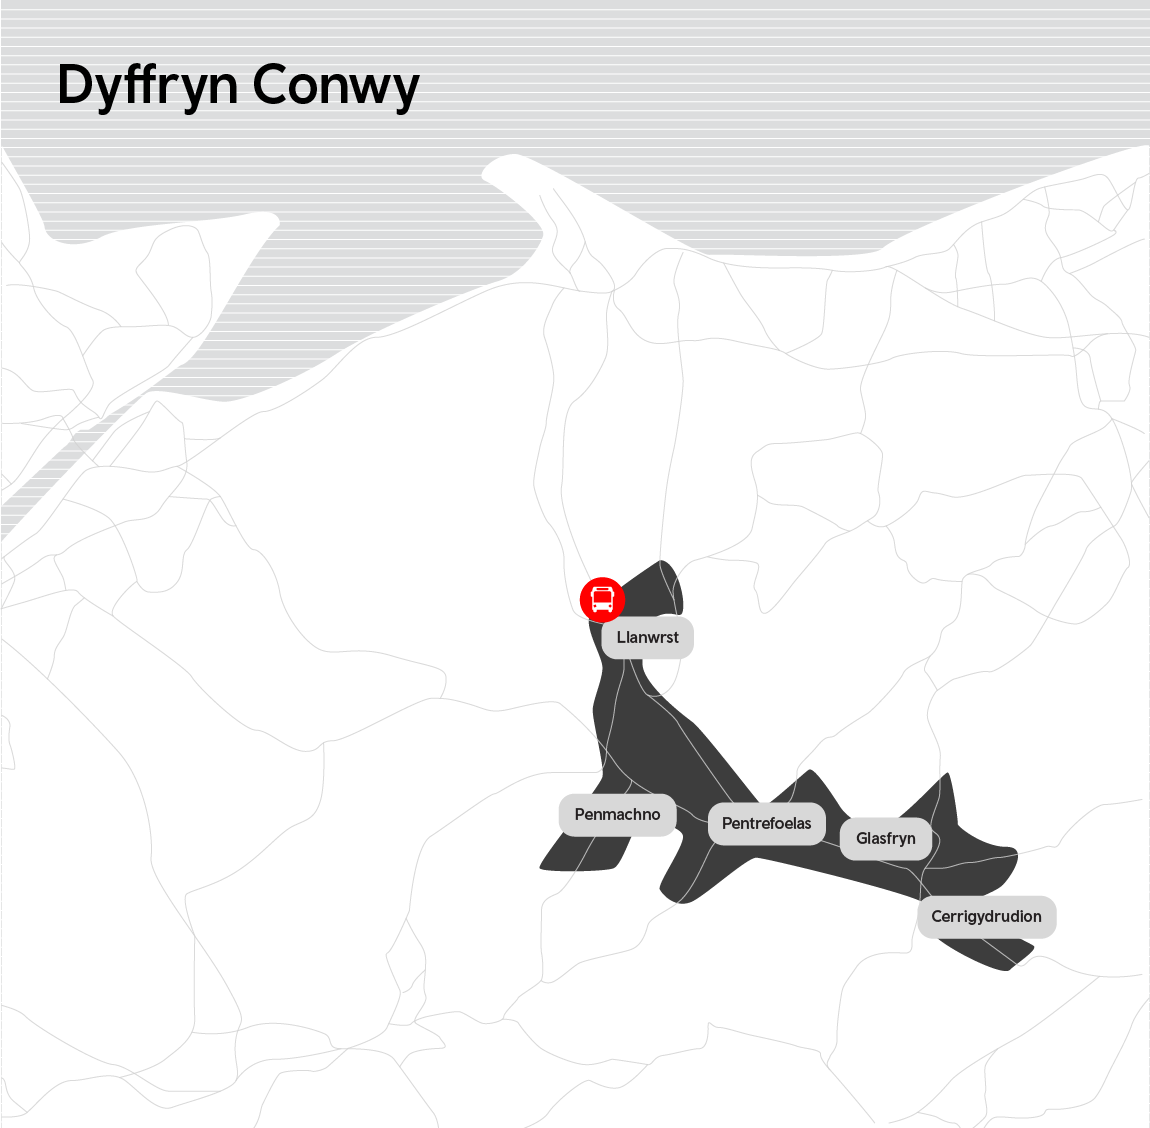 Map of Dyffryn Conwy